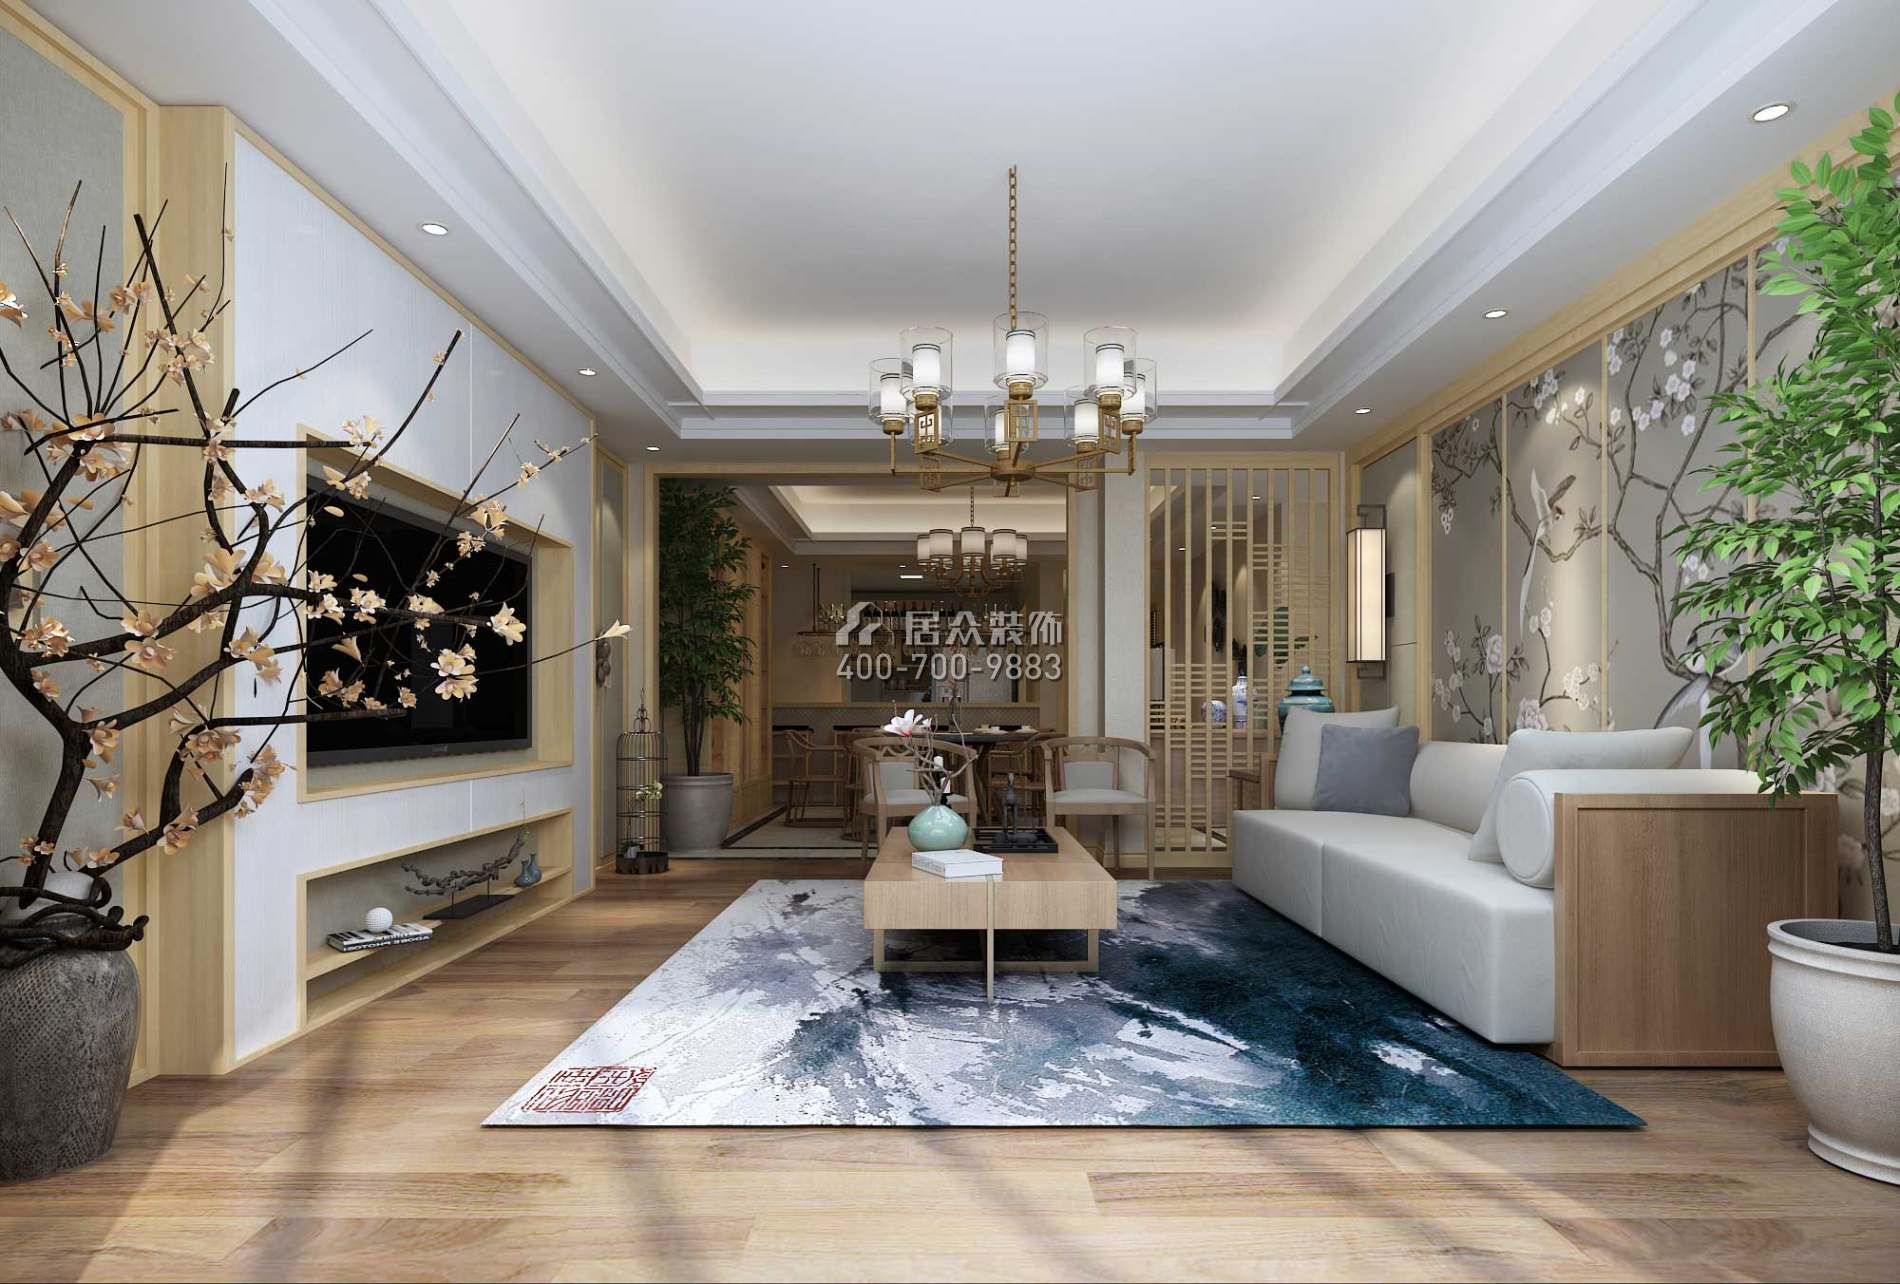 融创凡尔赛领馆108平方米中式风格平层户型客厅装修效果图